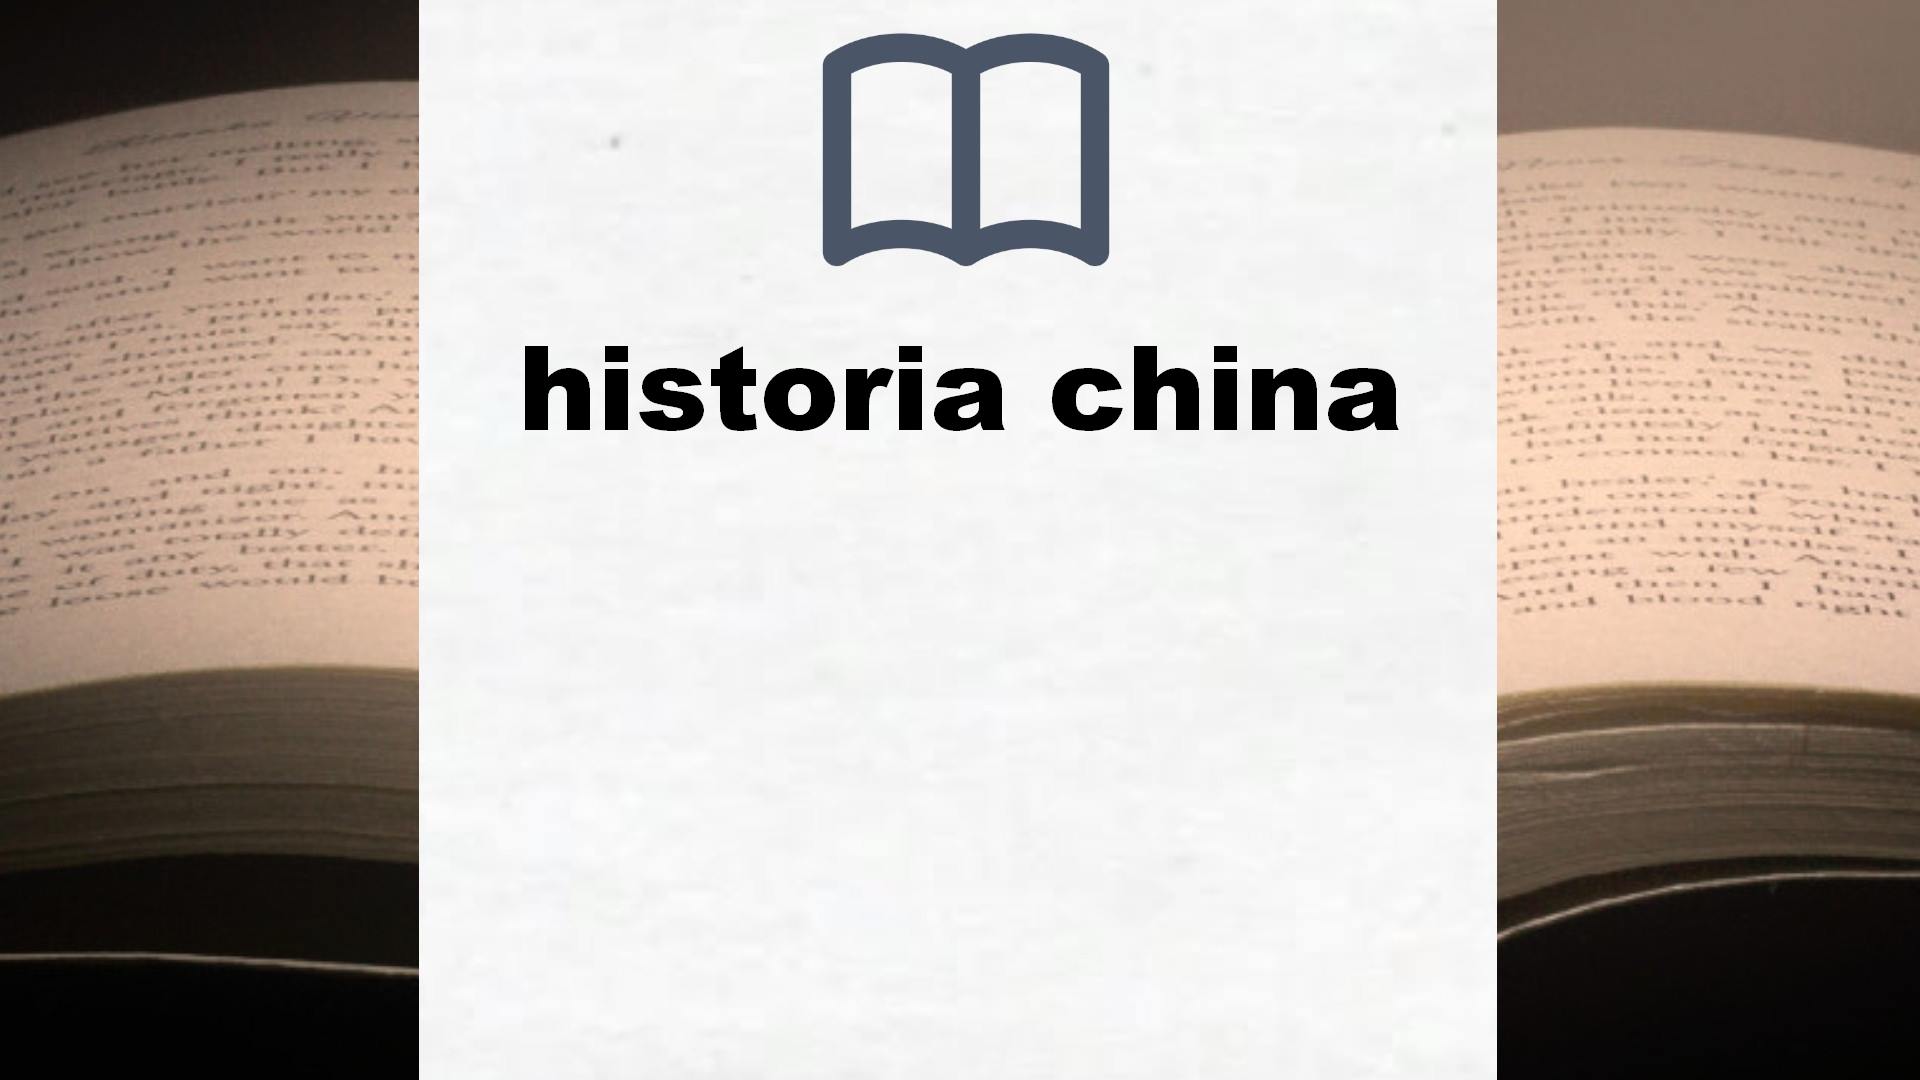 Libros sobre historia china